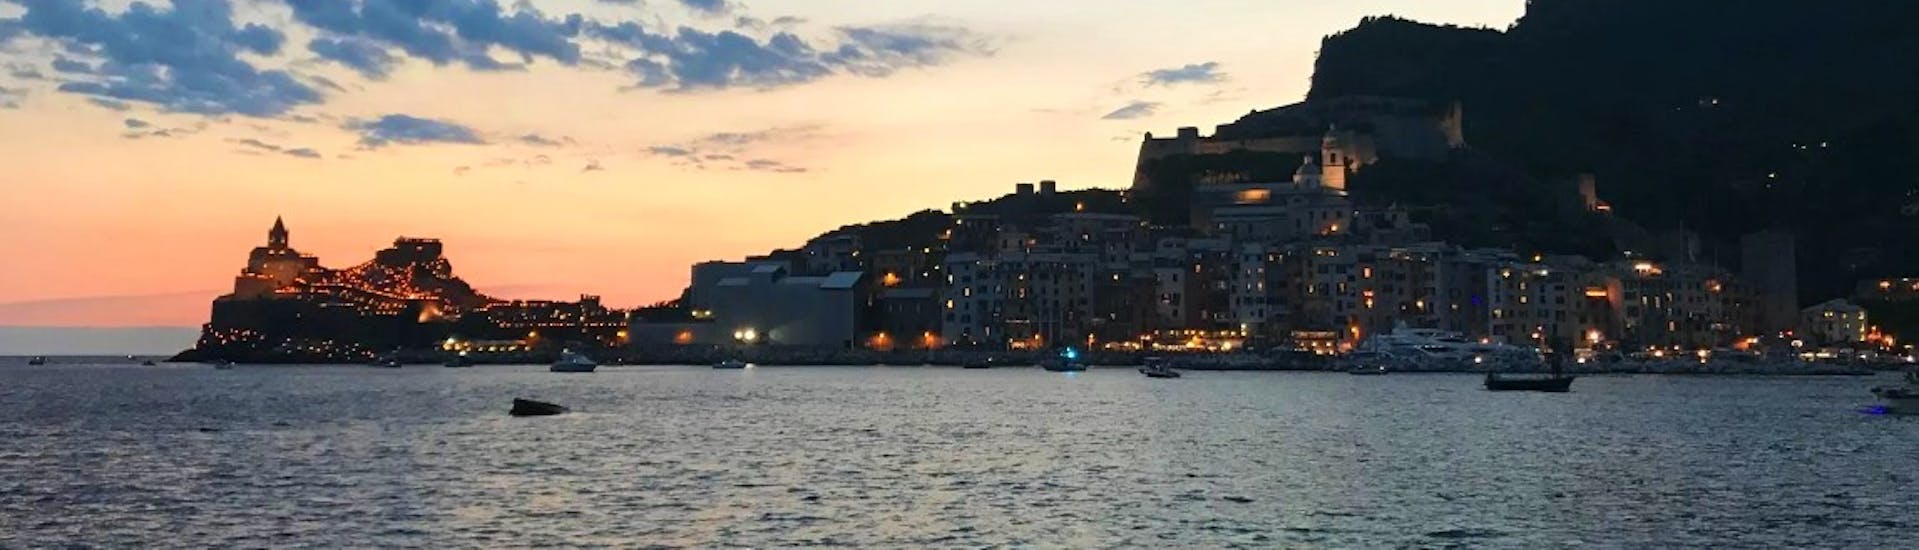 Zicht op de Golfo dei Poeti na zonsondergang tijdens de RIB sunset trip met aperitief van HopHop Boat La Spezia.